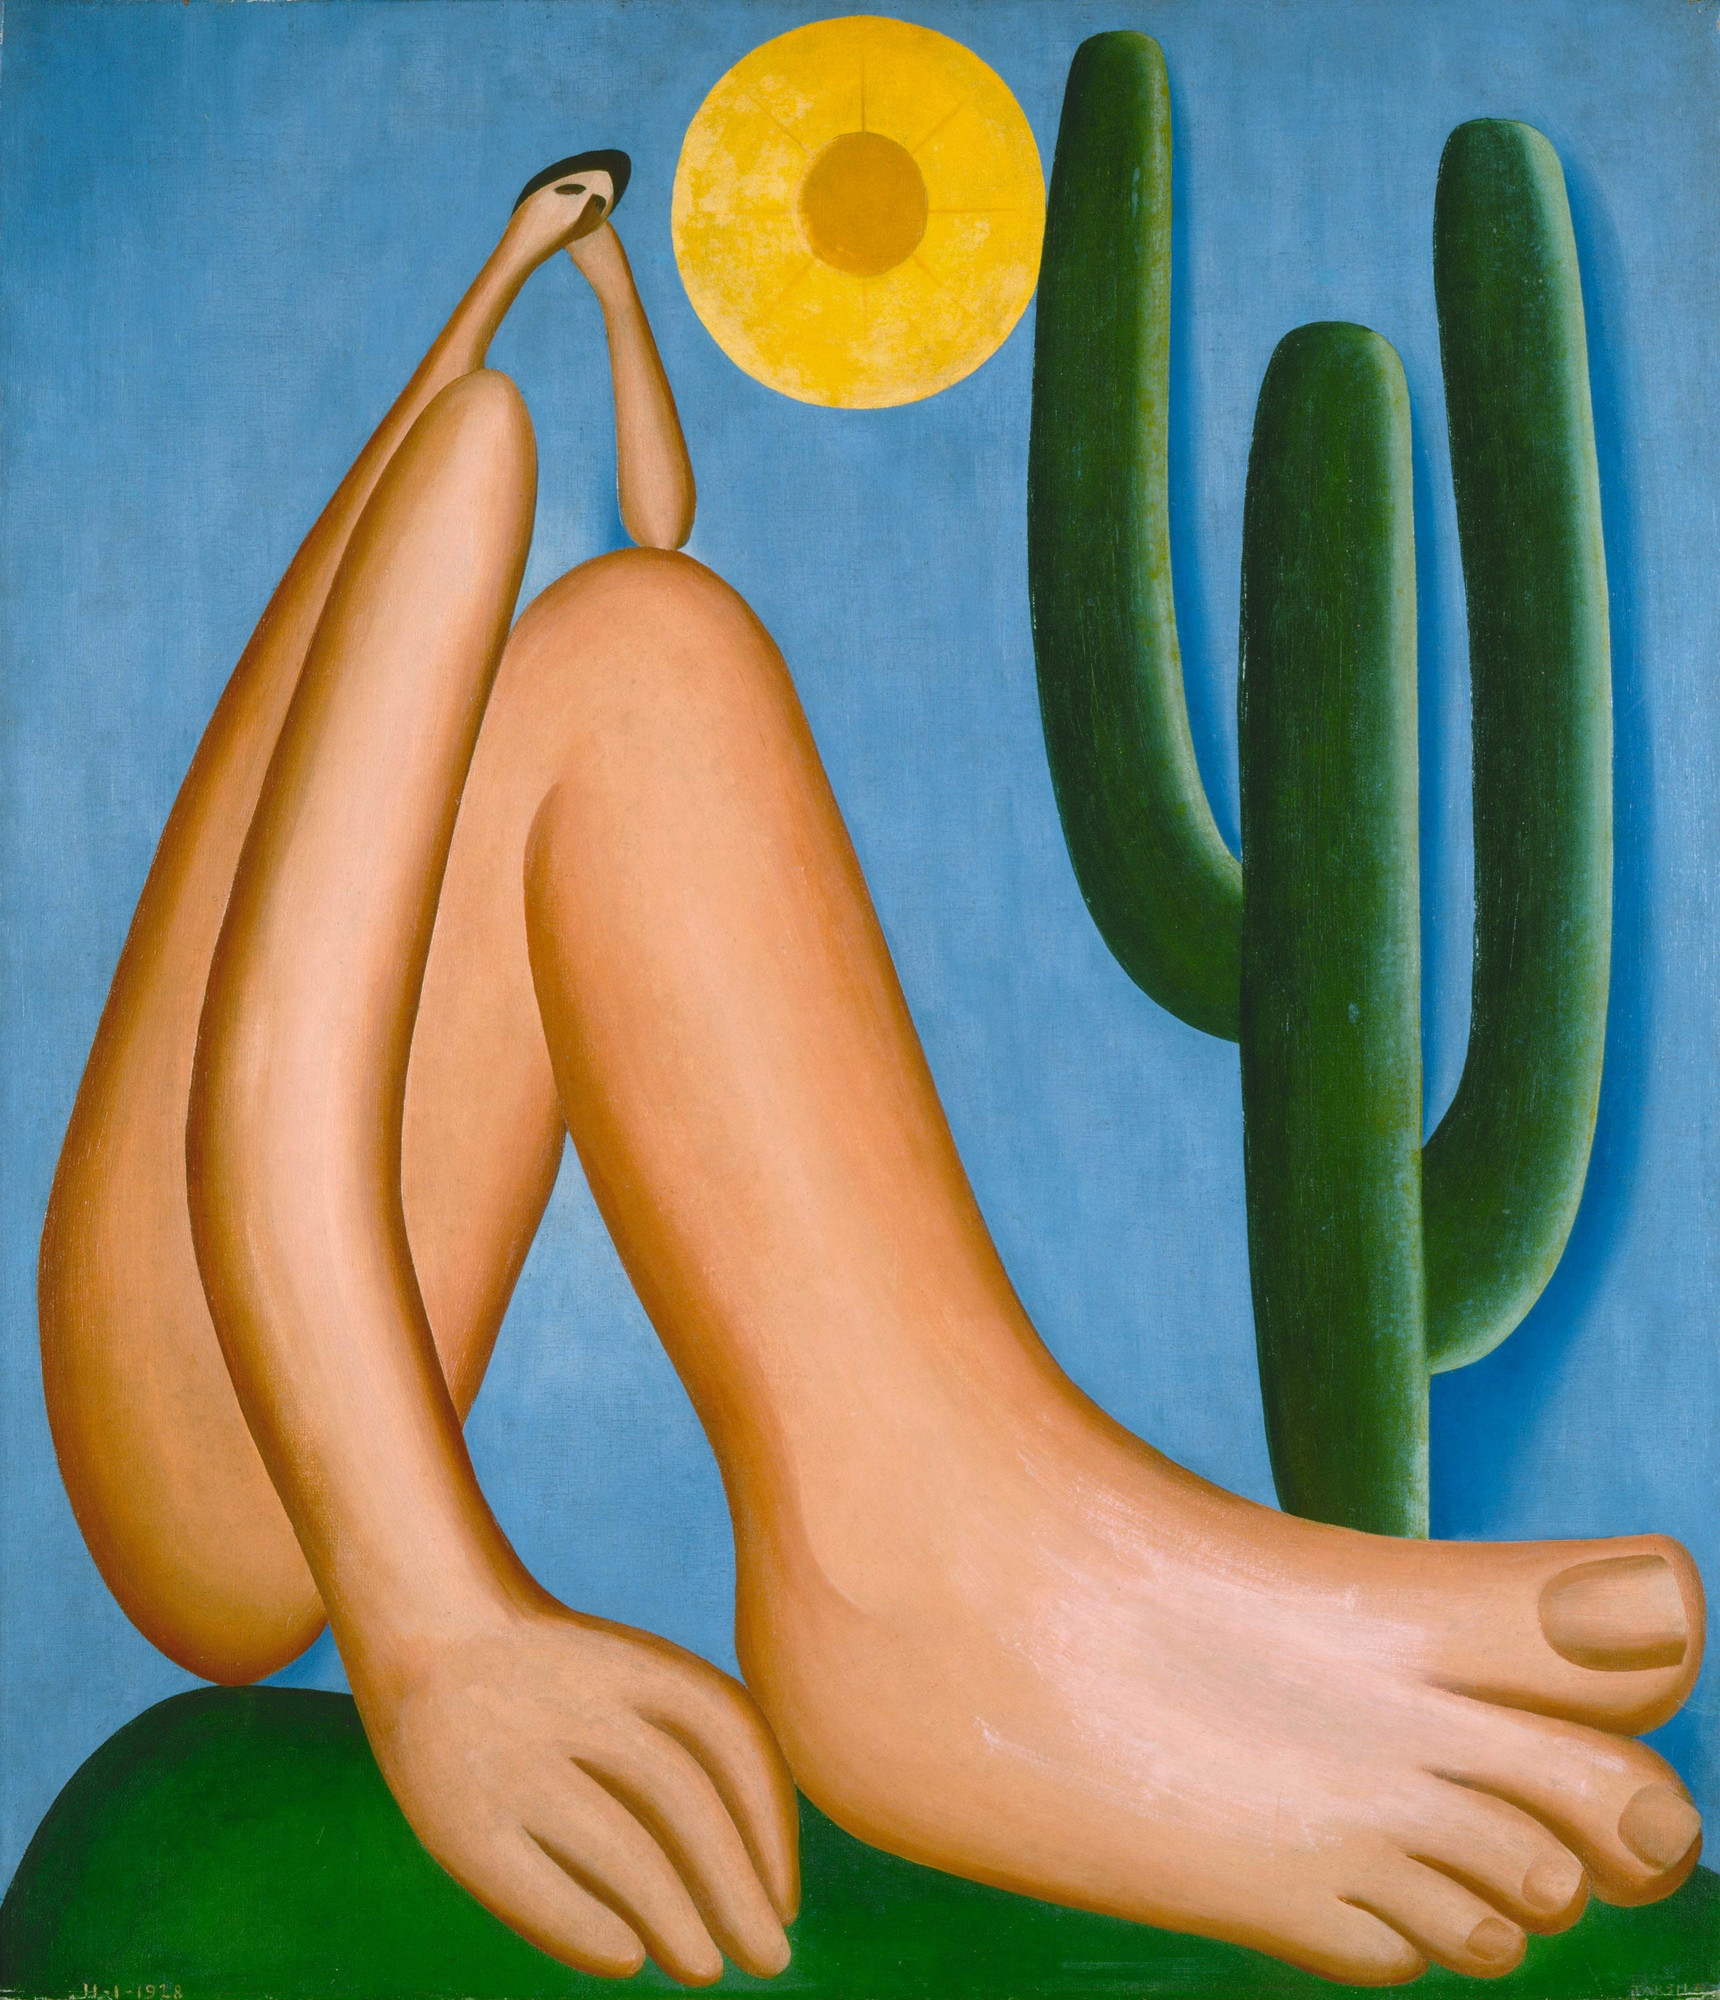 Tarsila do Amaral. Abaporu. 1928. Oil on canvas, 33 7/16 x 28 3/4″ (85 x 73 cm). Collection MALBA, Museo de Arte Latinoamericano de Buenos Aires. © Tarsila do Amaral Licenciamentos